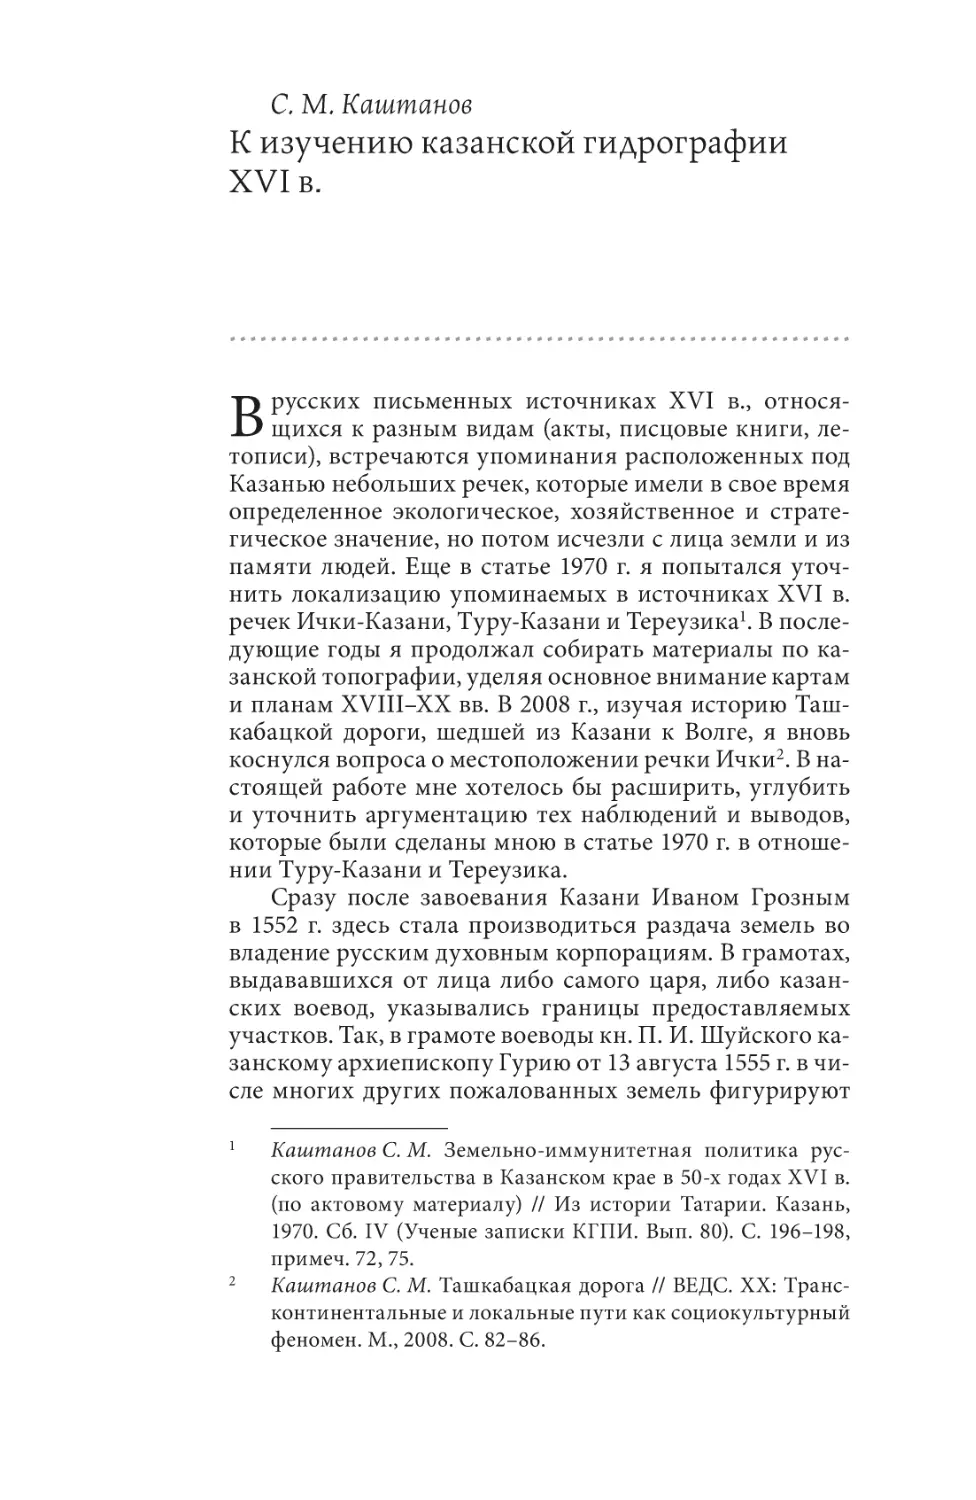 Каштанов С. М. К изучению казанской гидрографии XVI в